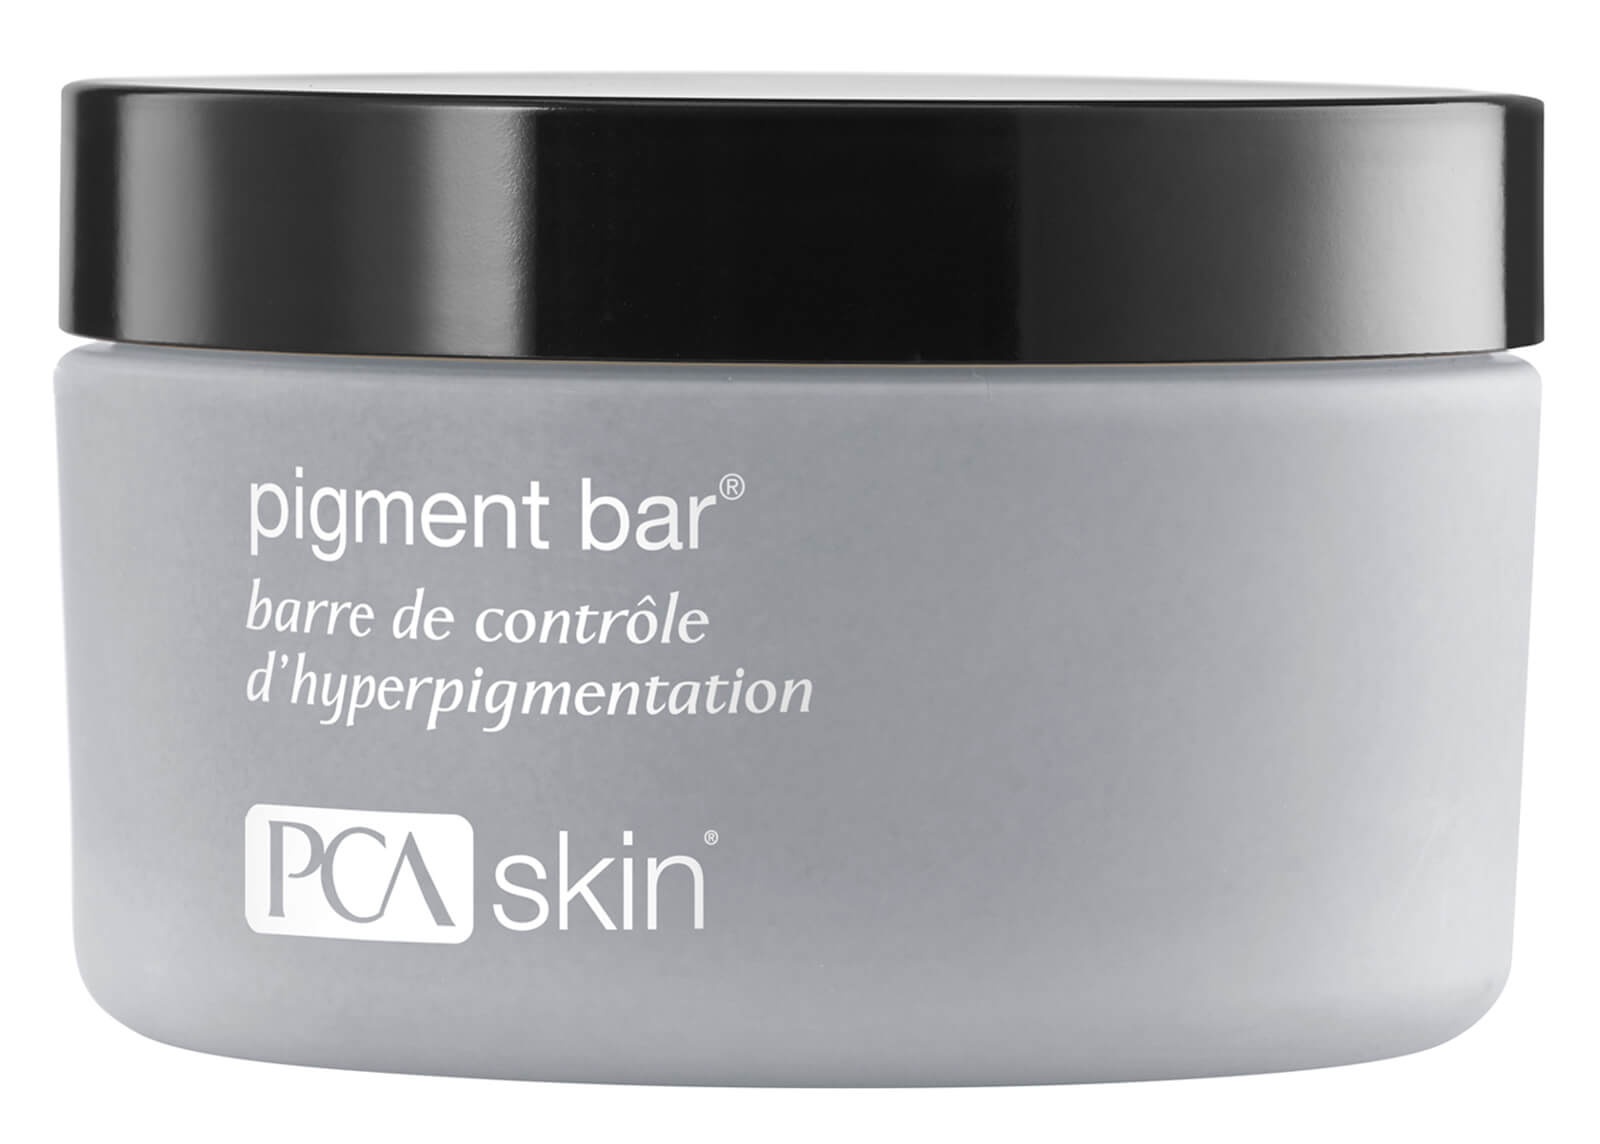 PCA  Skin Pigment Bar